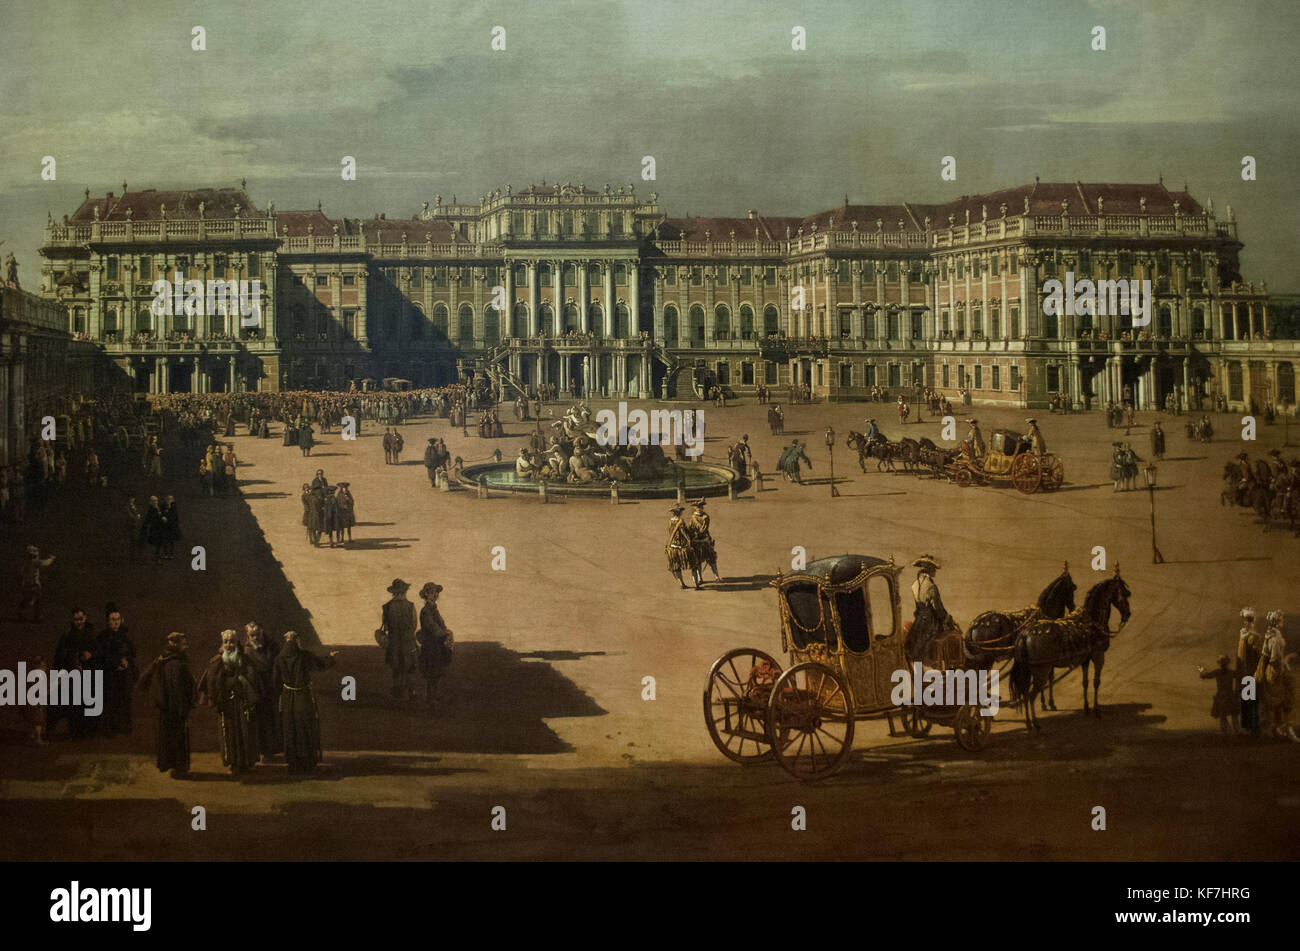 Bernardo bellotto (1721-1780), pintor italiano. Vista del palacio de Schonbrunn. fachada exterior. 1759-61. Kunsthistorisches Museum (museo de la historia del arte) de Viena y Austria. Foto de stock